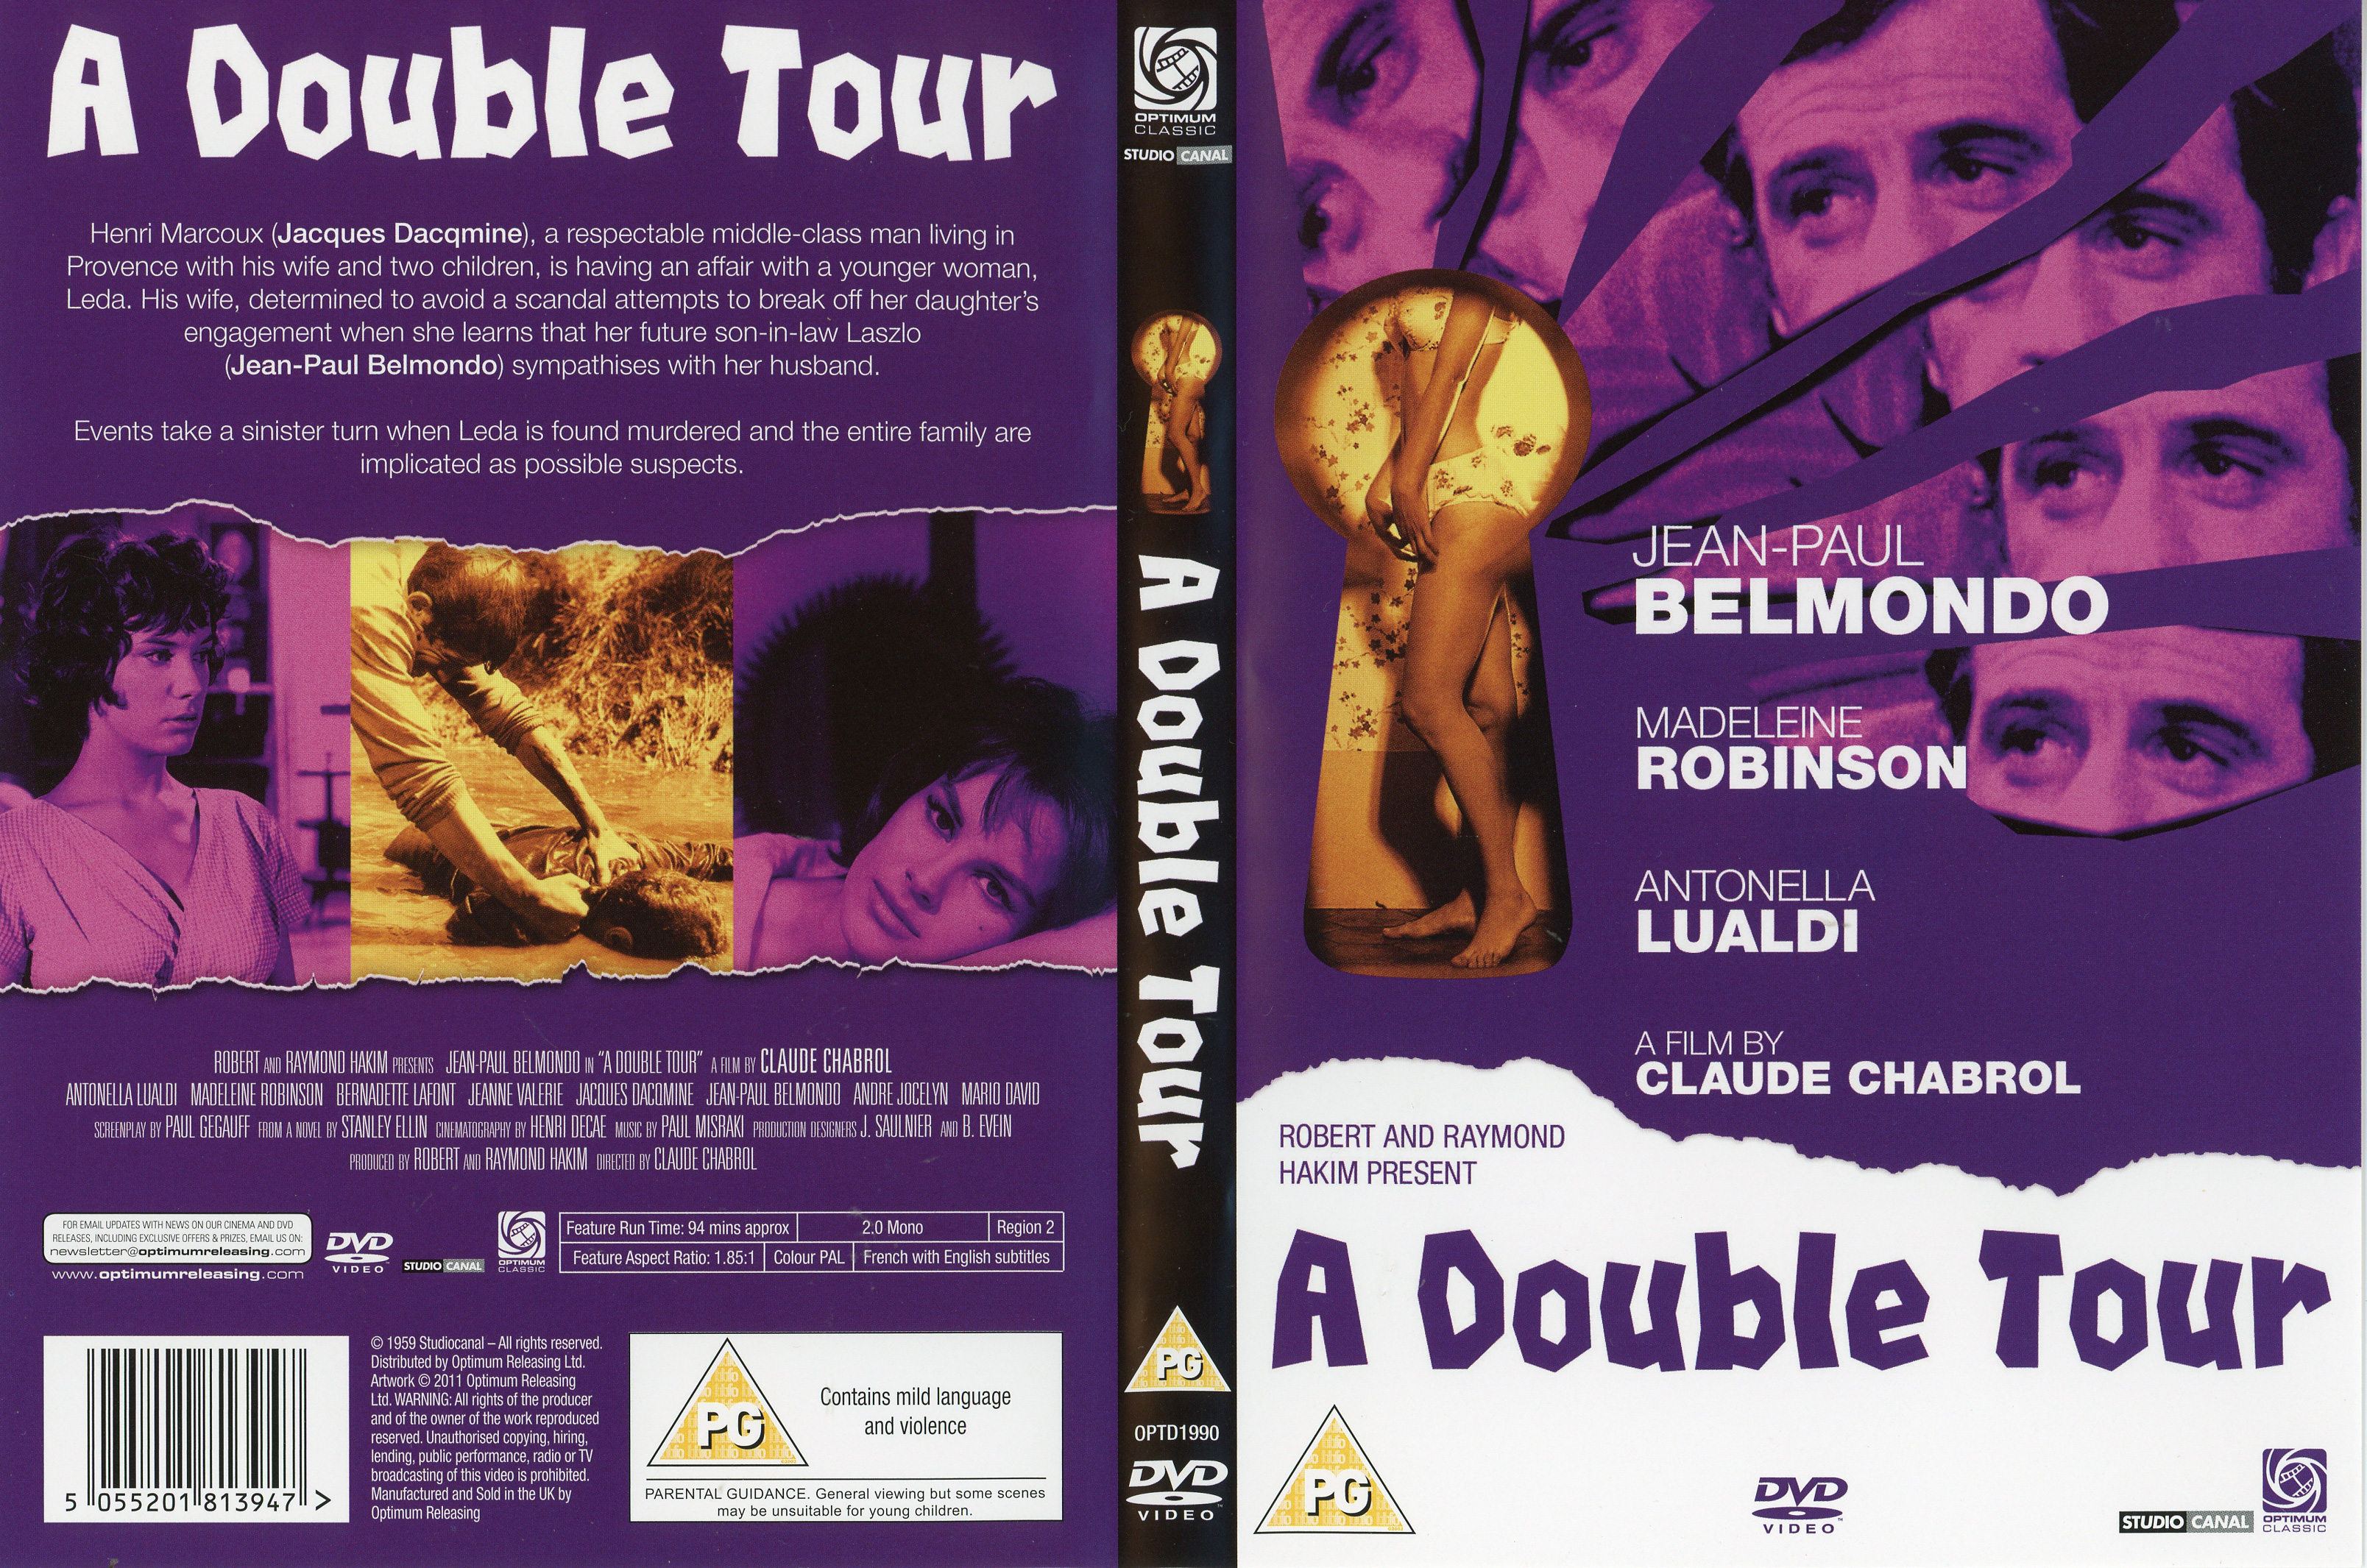 Jaquette DVD A double tour v3